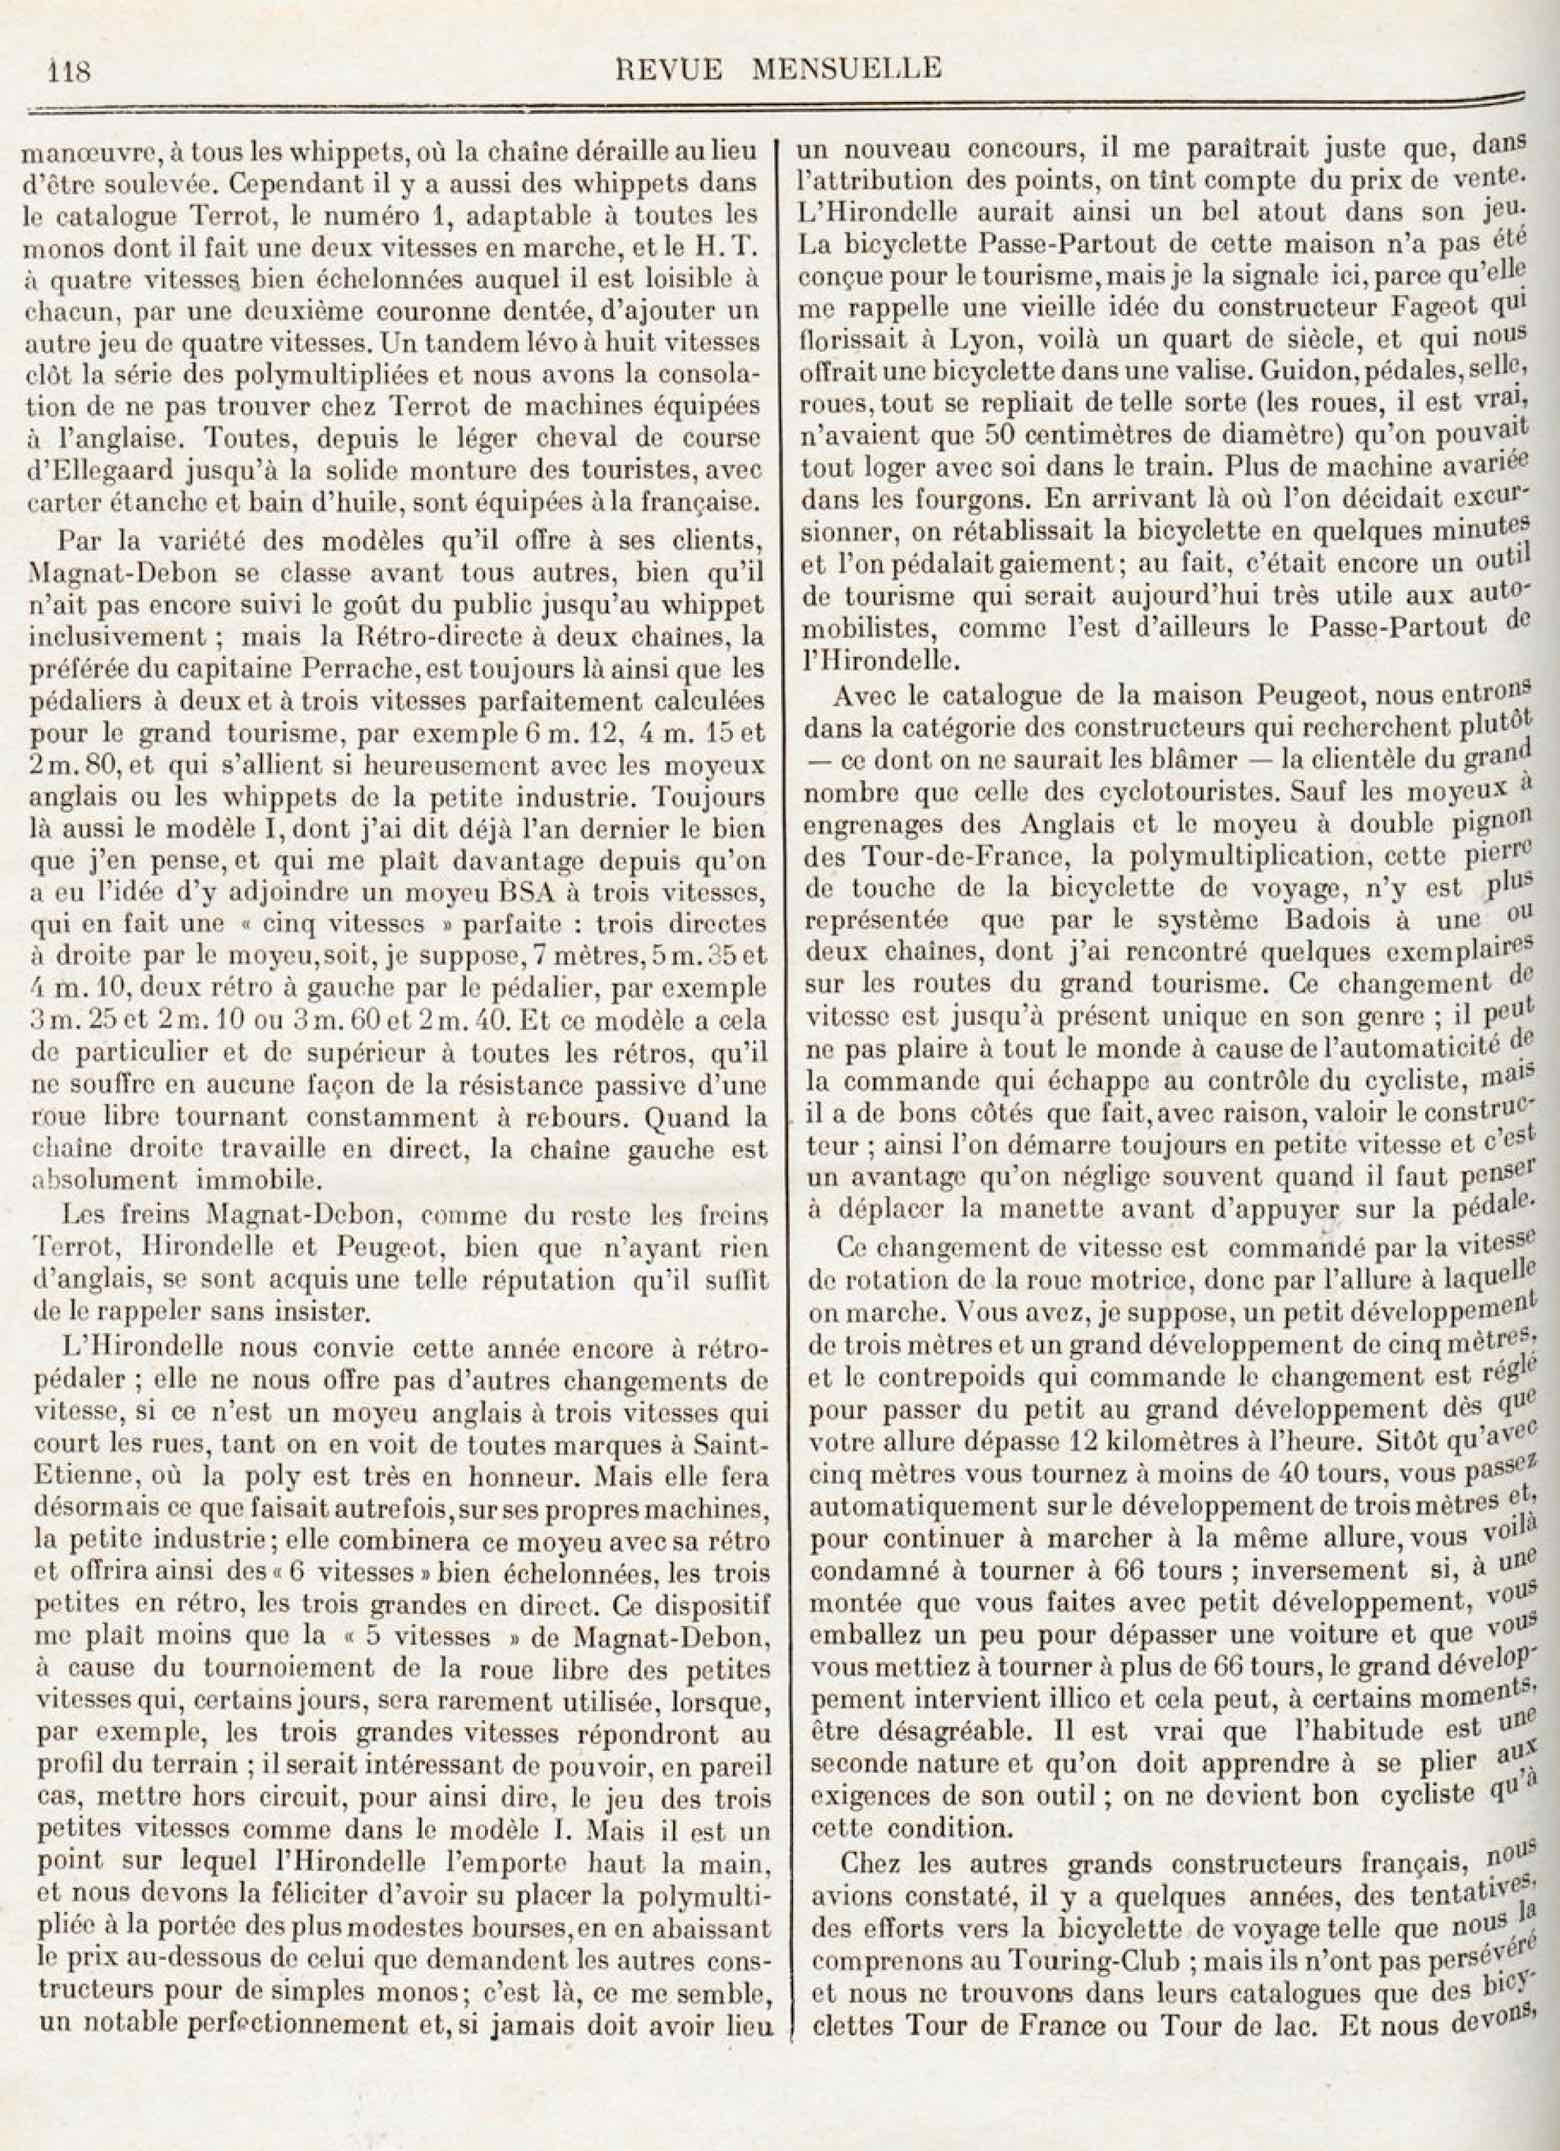 T.C.F. Revue Mensuelle March 1913 - La Bicyclette hors du Salon scan 3 main image